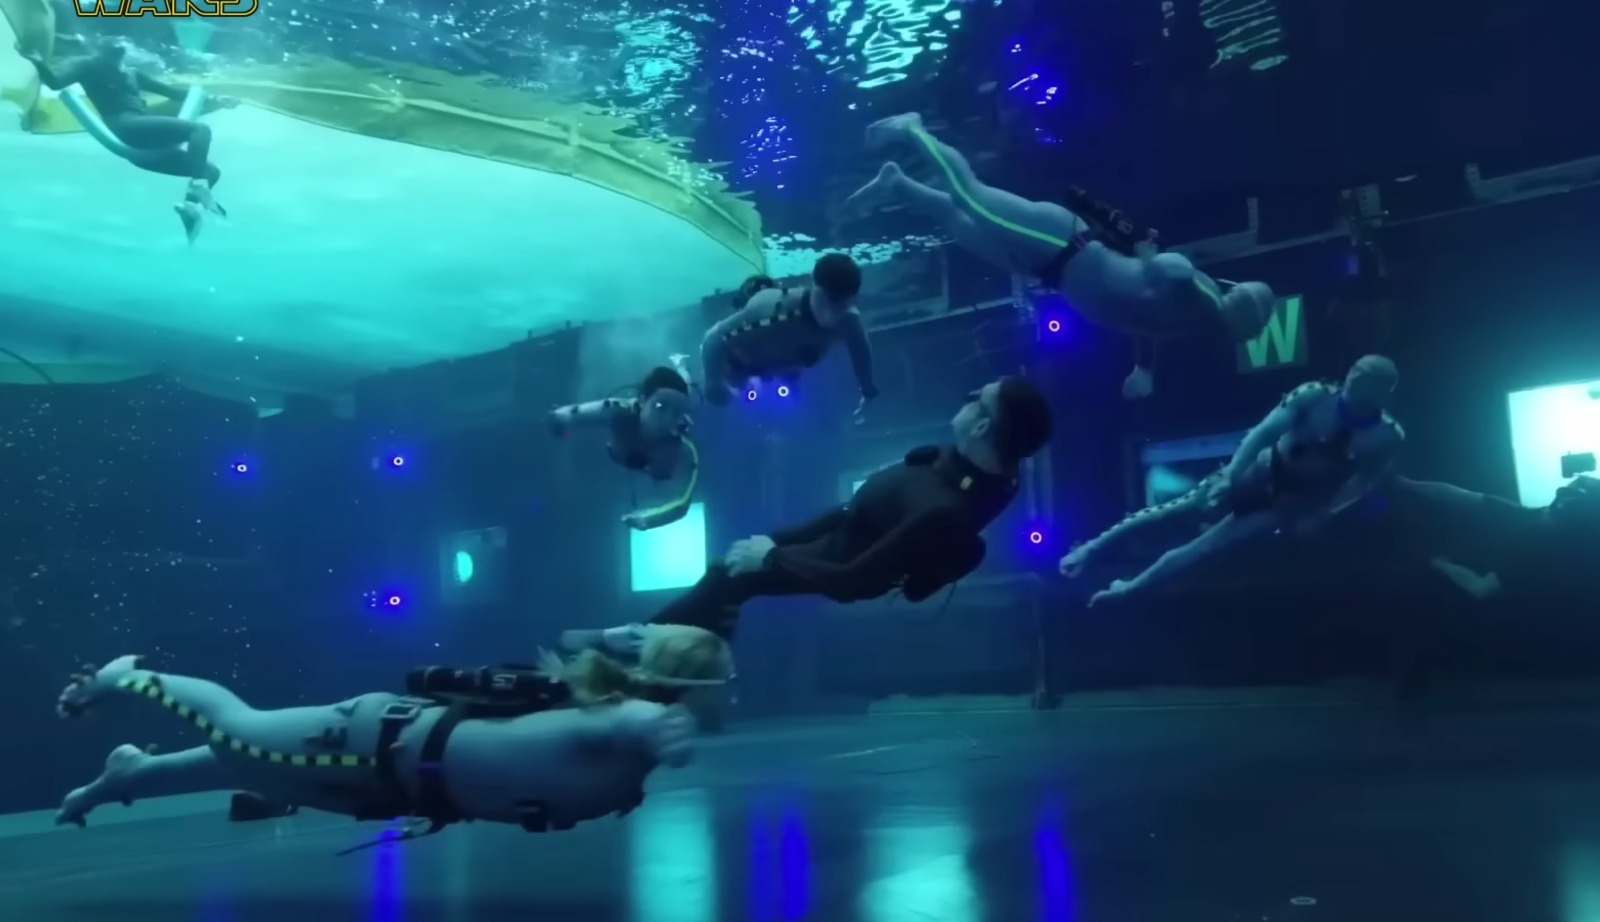 SCUBAJET in Avatar - Making of scene in the pool